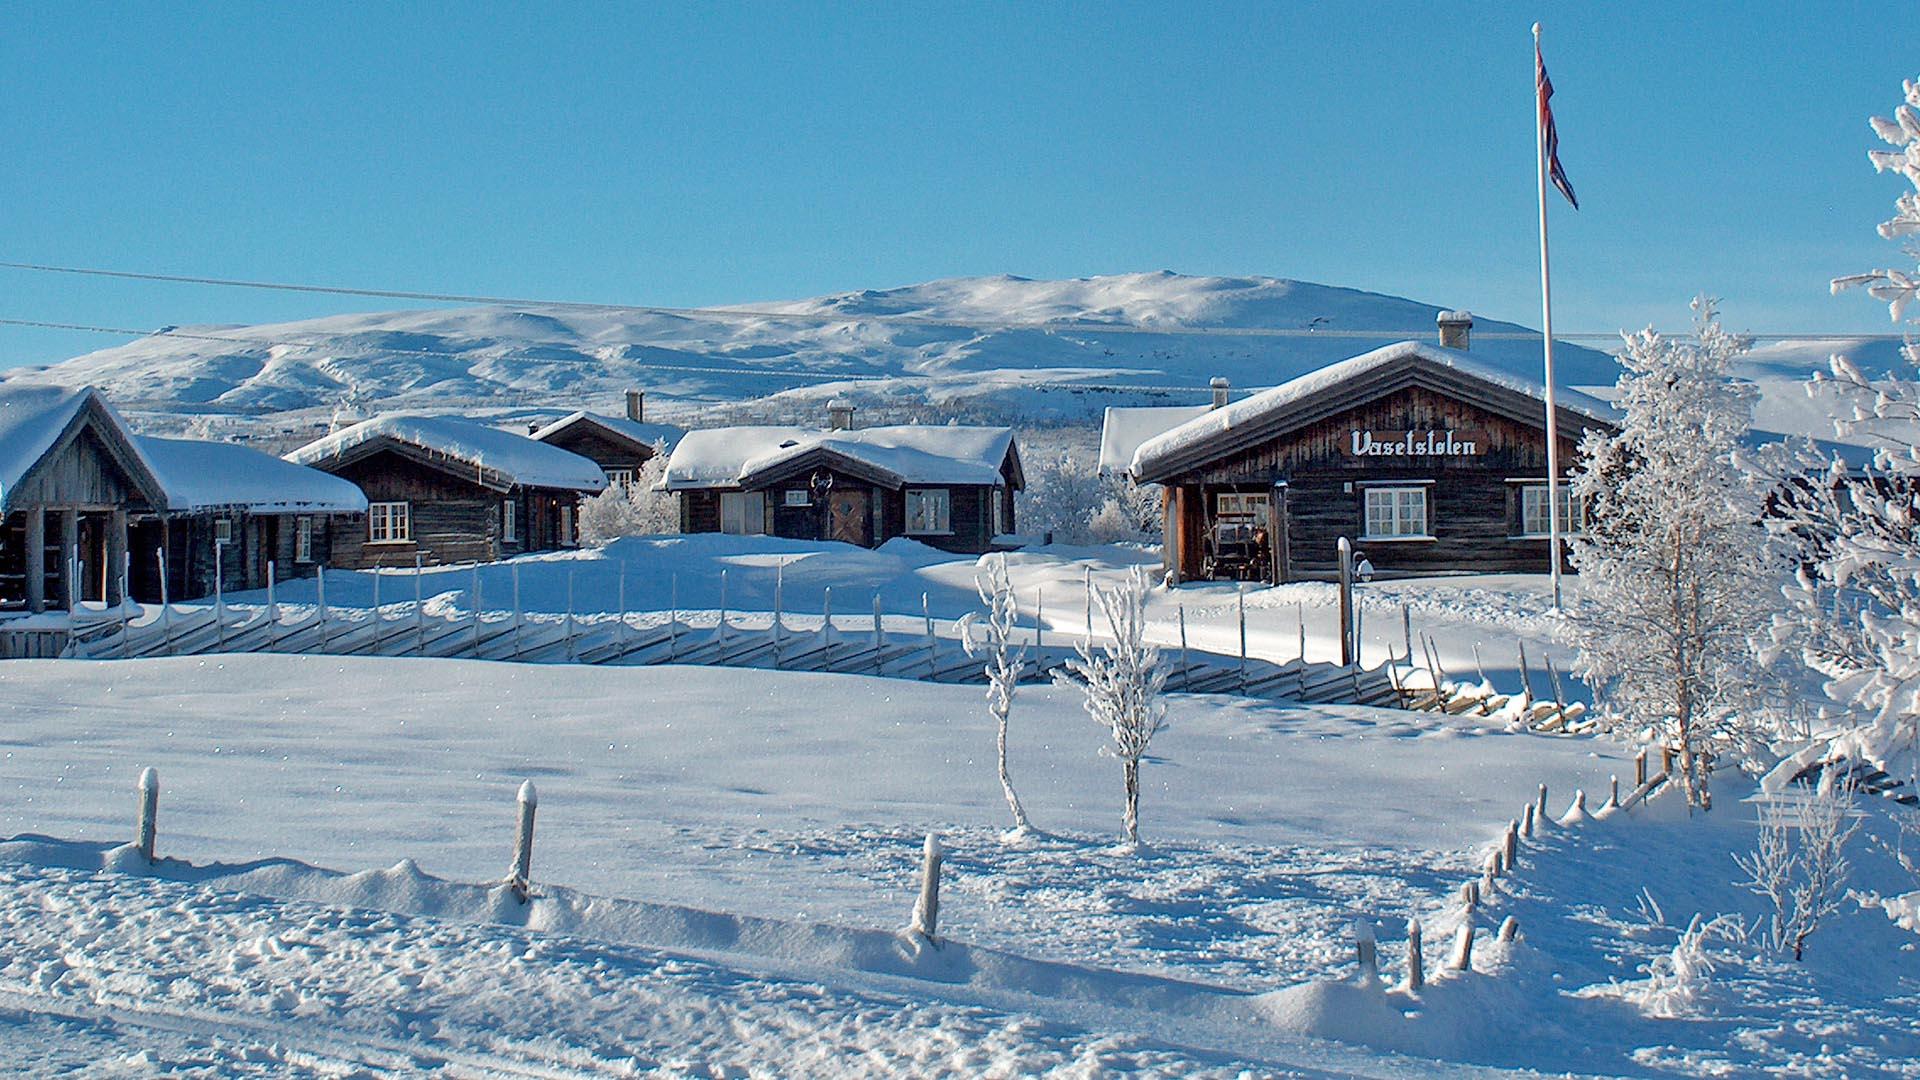 Hütten in weißer Winterlandschaft im Fjell. Blauer Himmel, norwegische Flagge